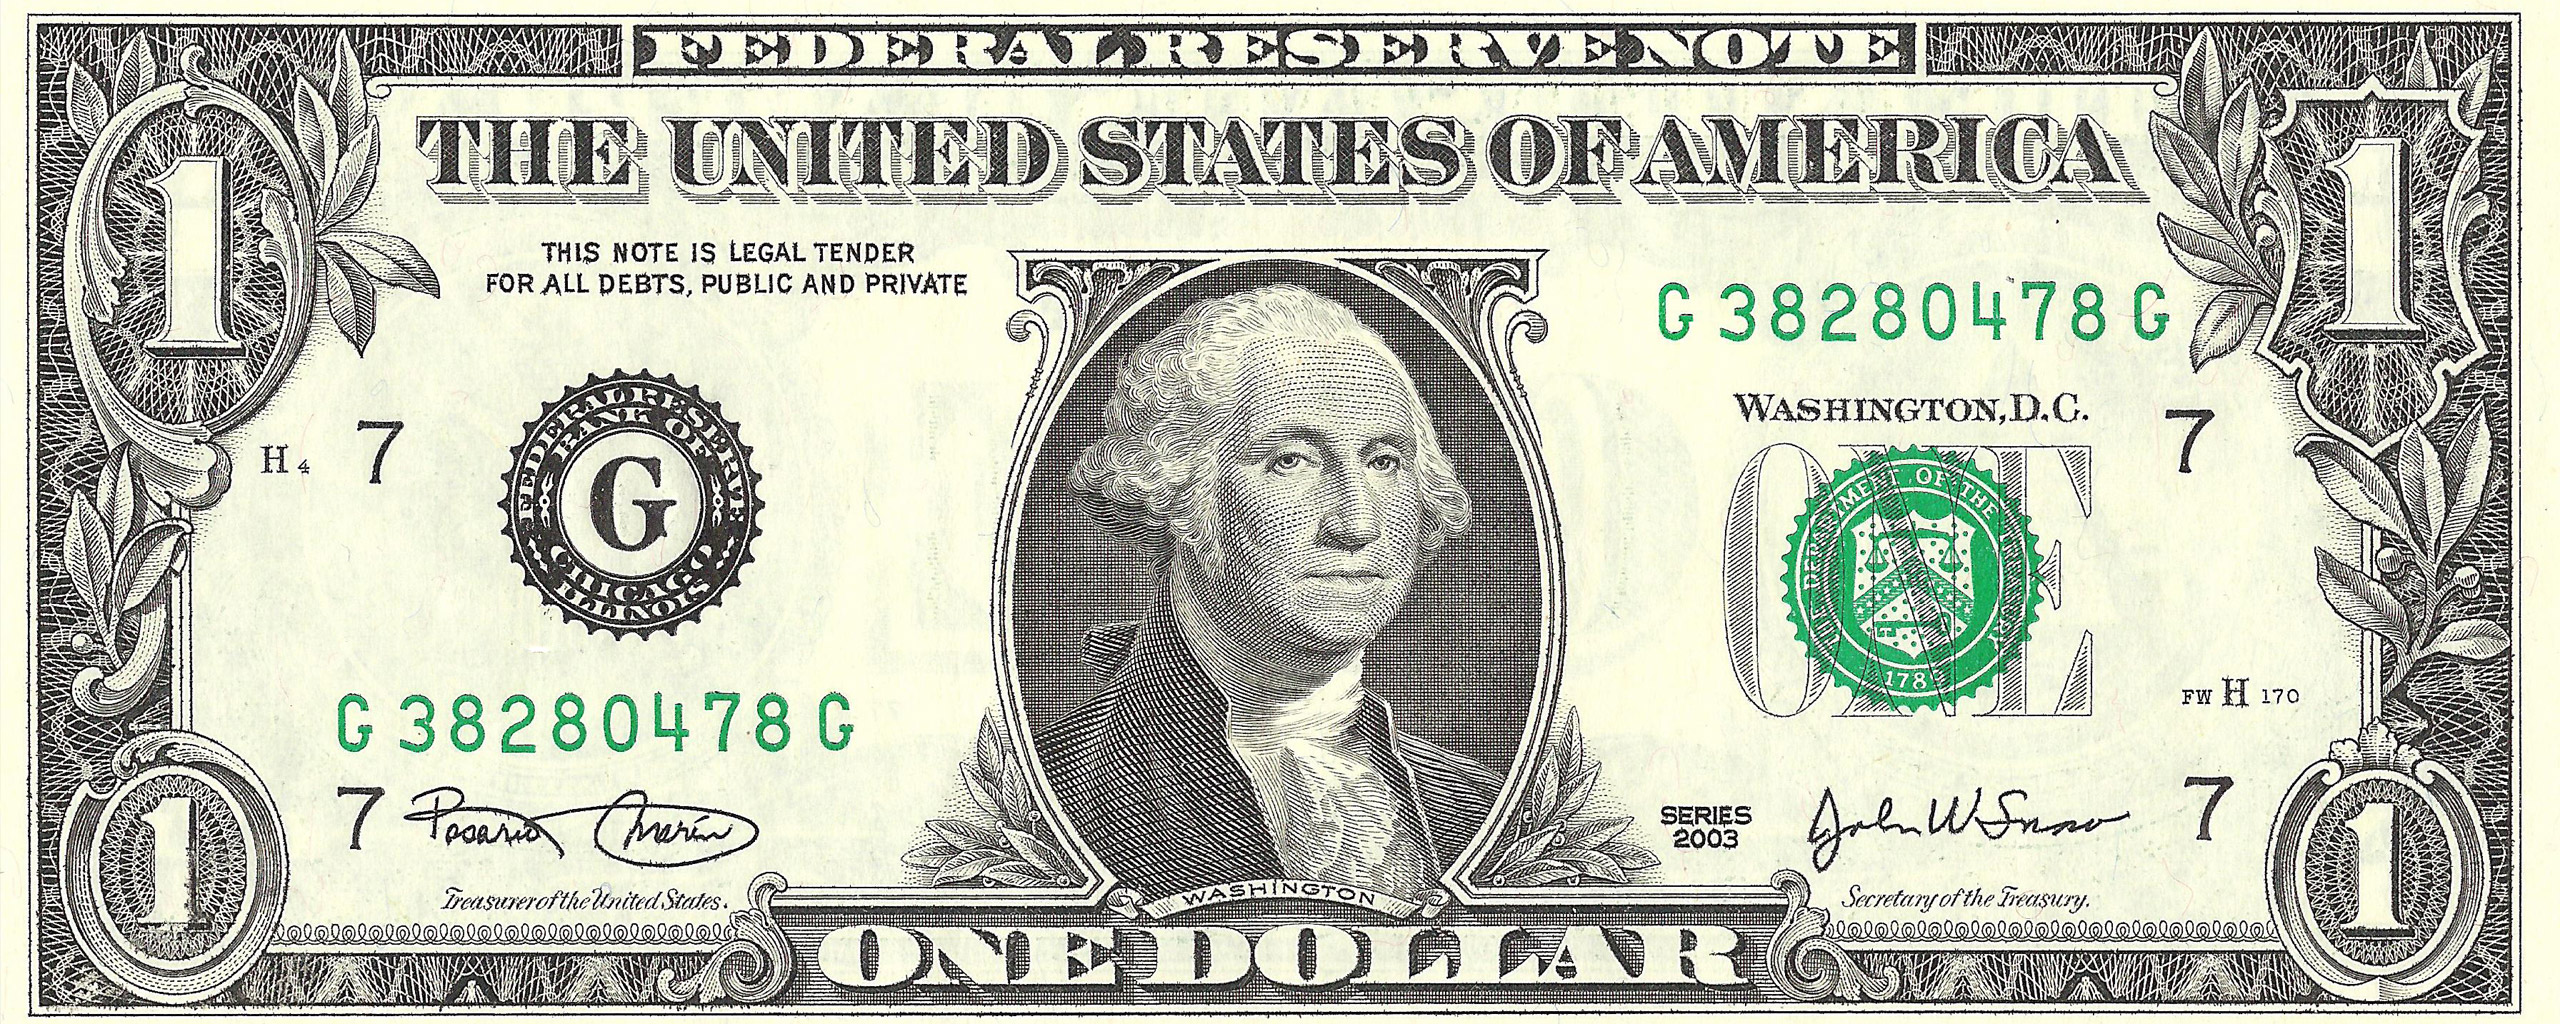 George Washington on money